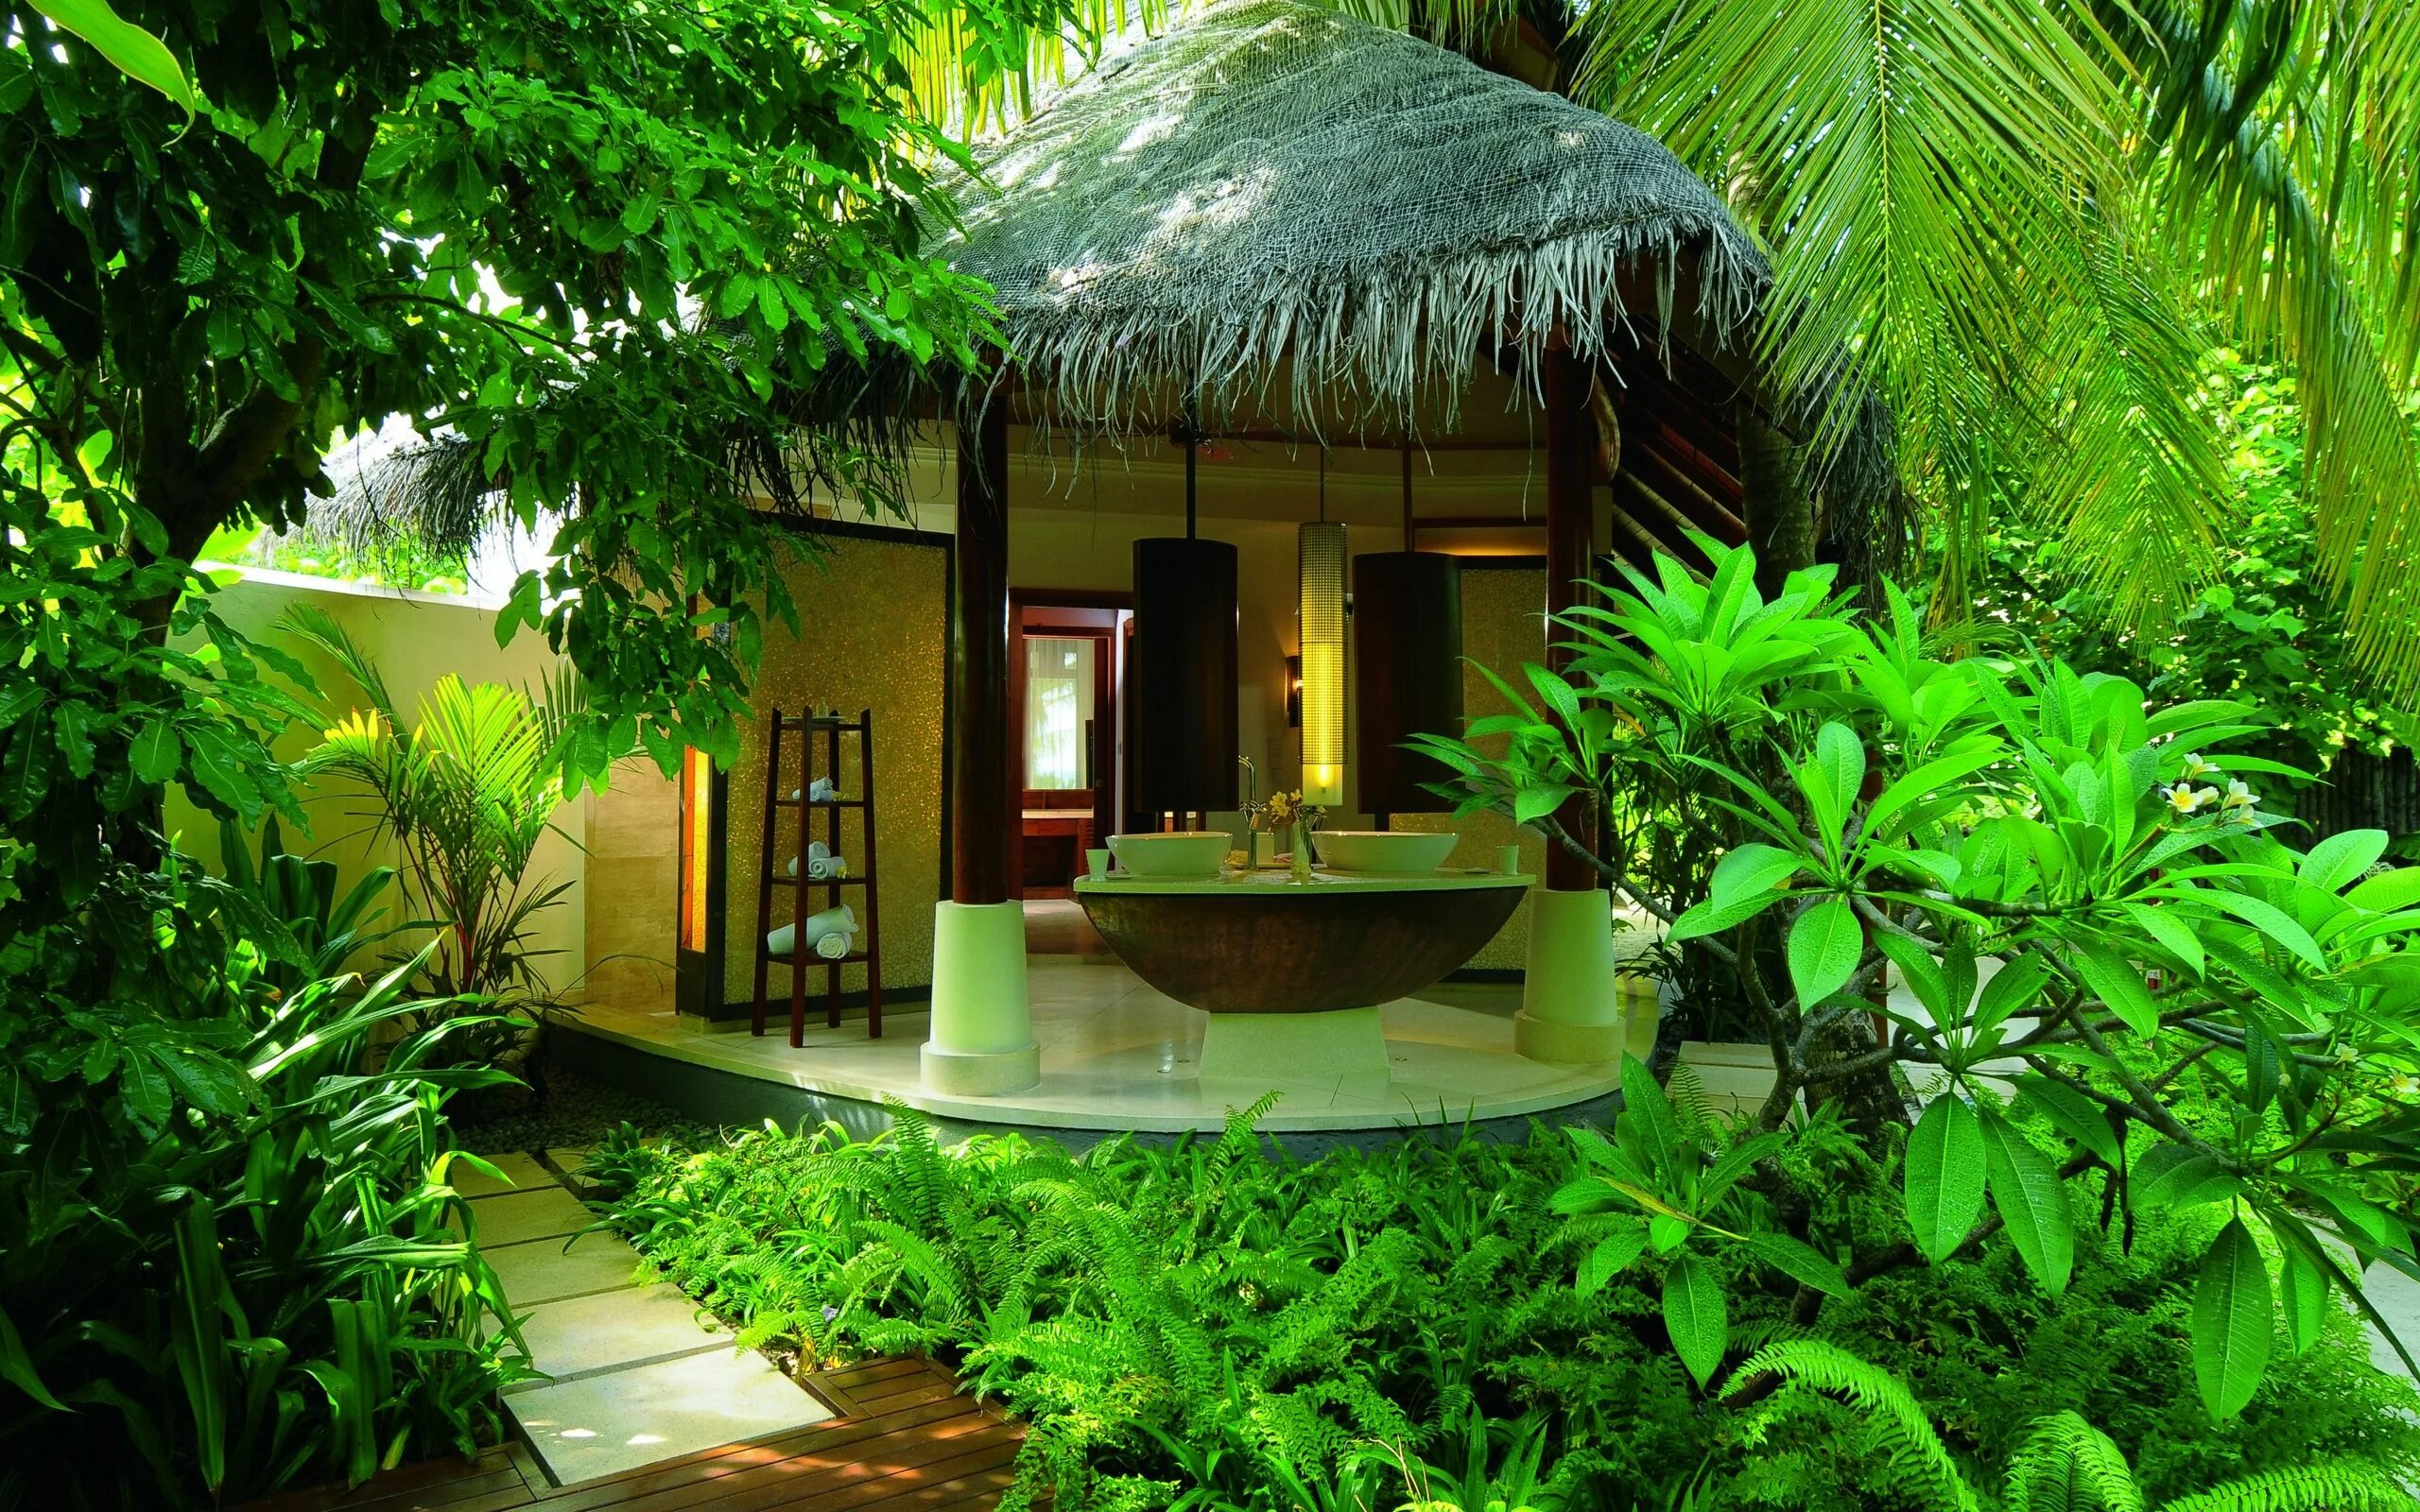 Place to relax. Шри Ланка бунгало. Бали отель в джунглях. Мальдивы тропики бунгало. Мальдивы Шри Ланка бунгало.